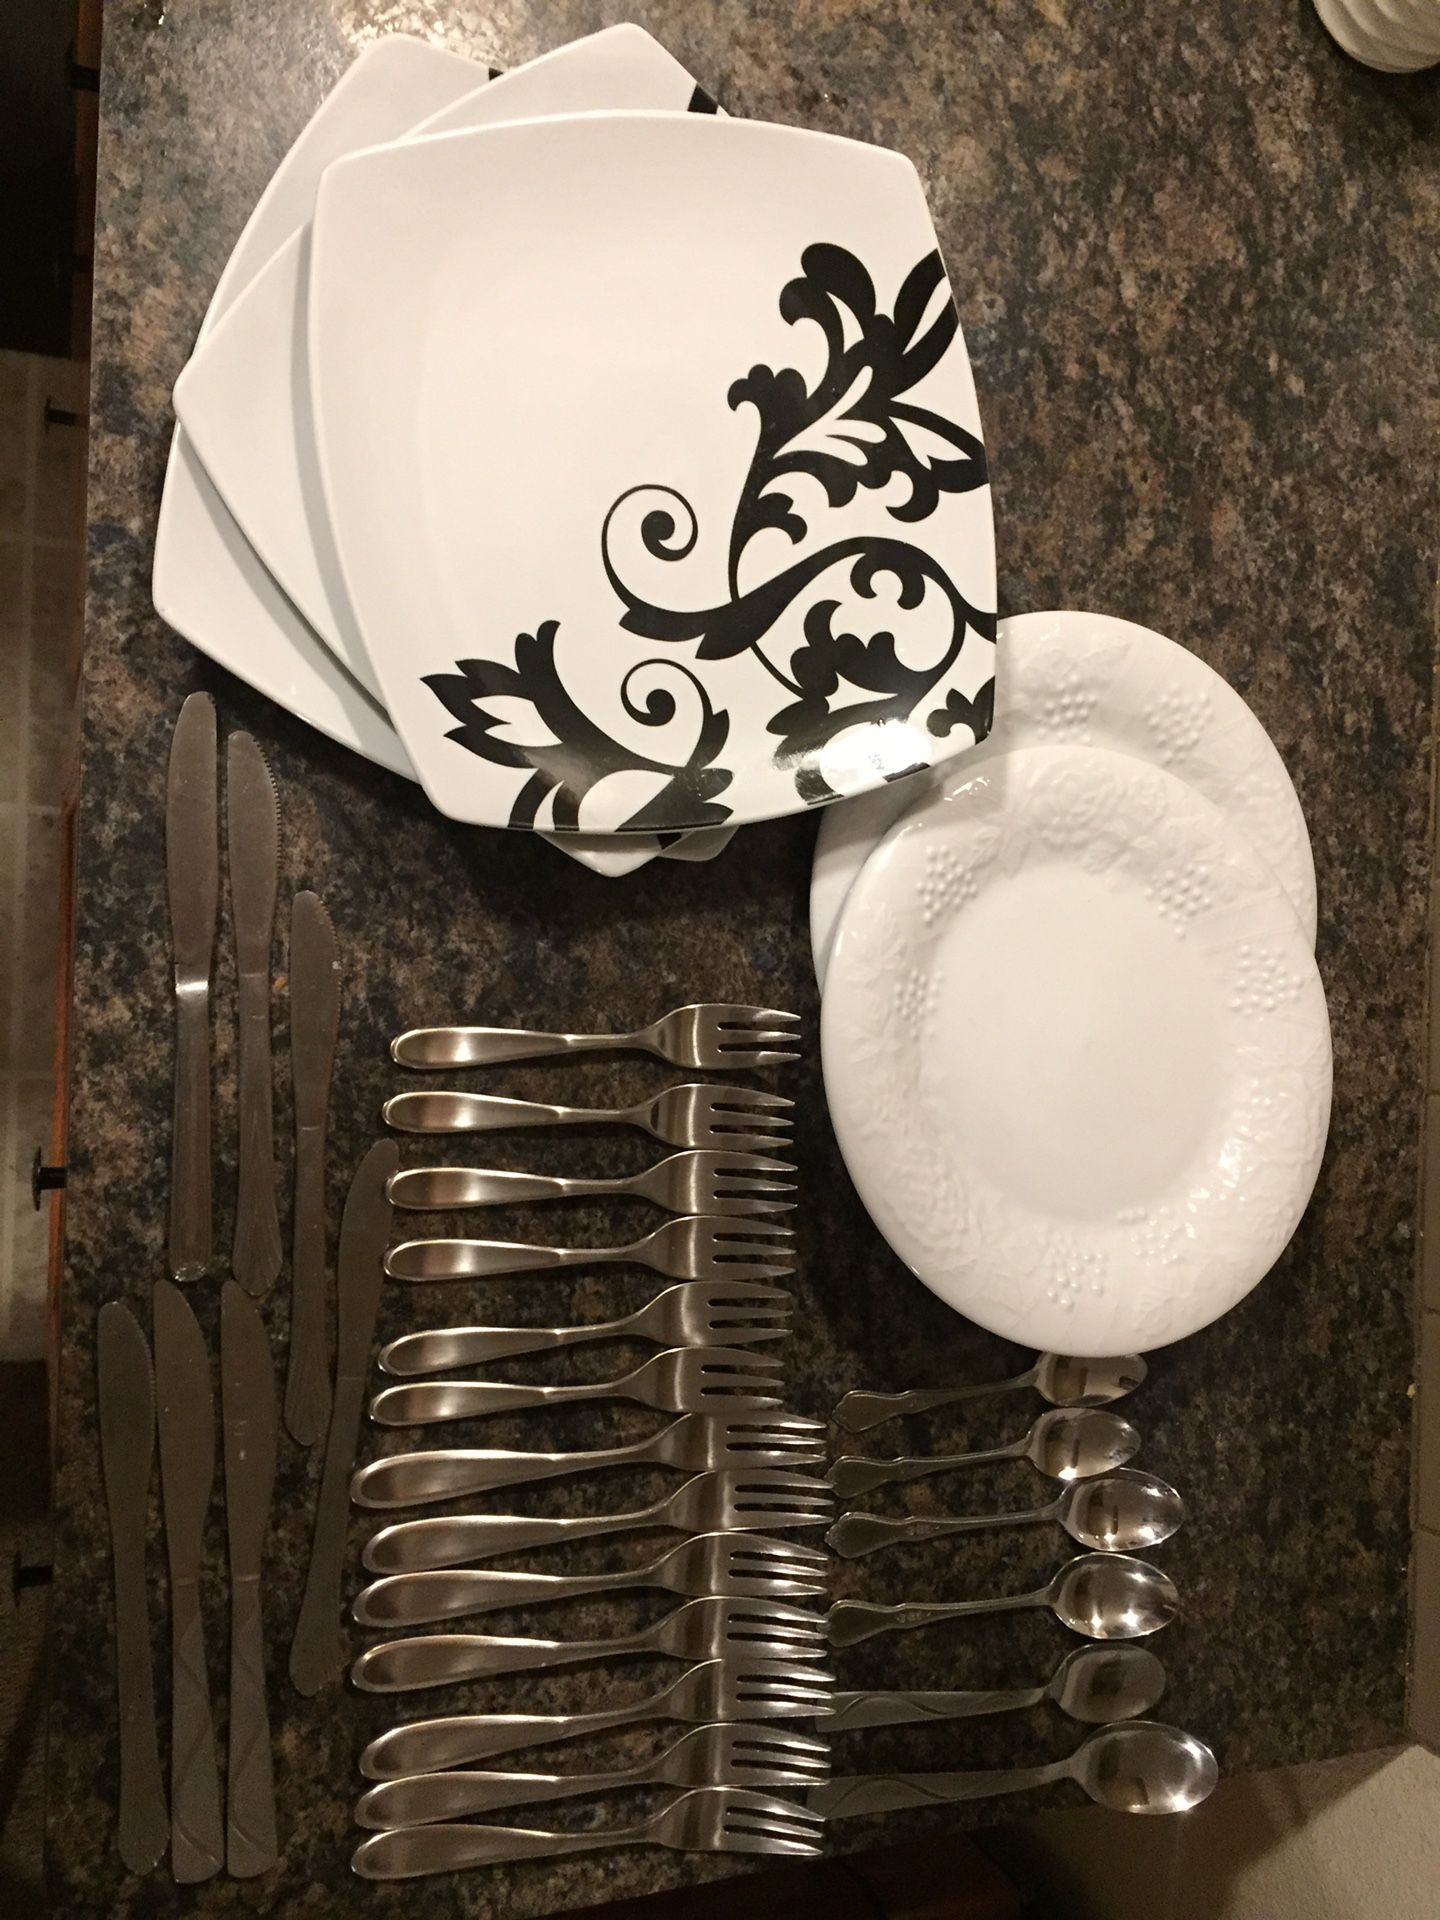 Silverware plate bundle